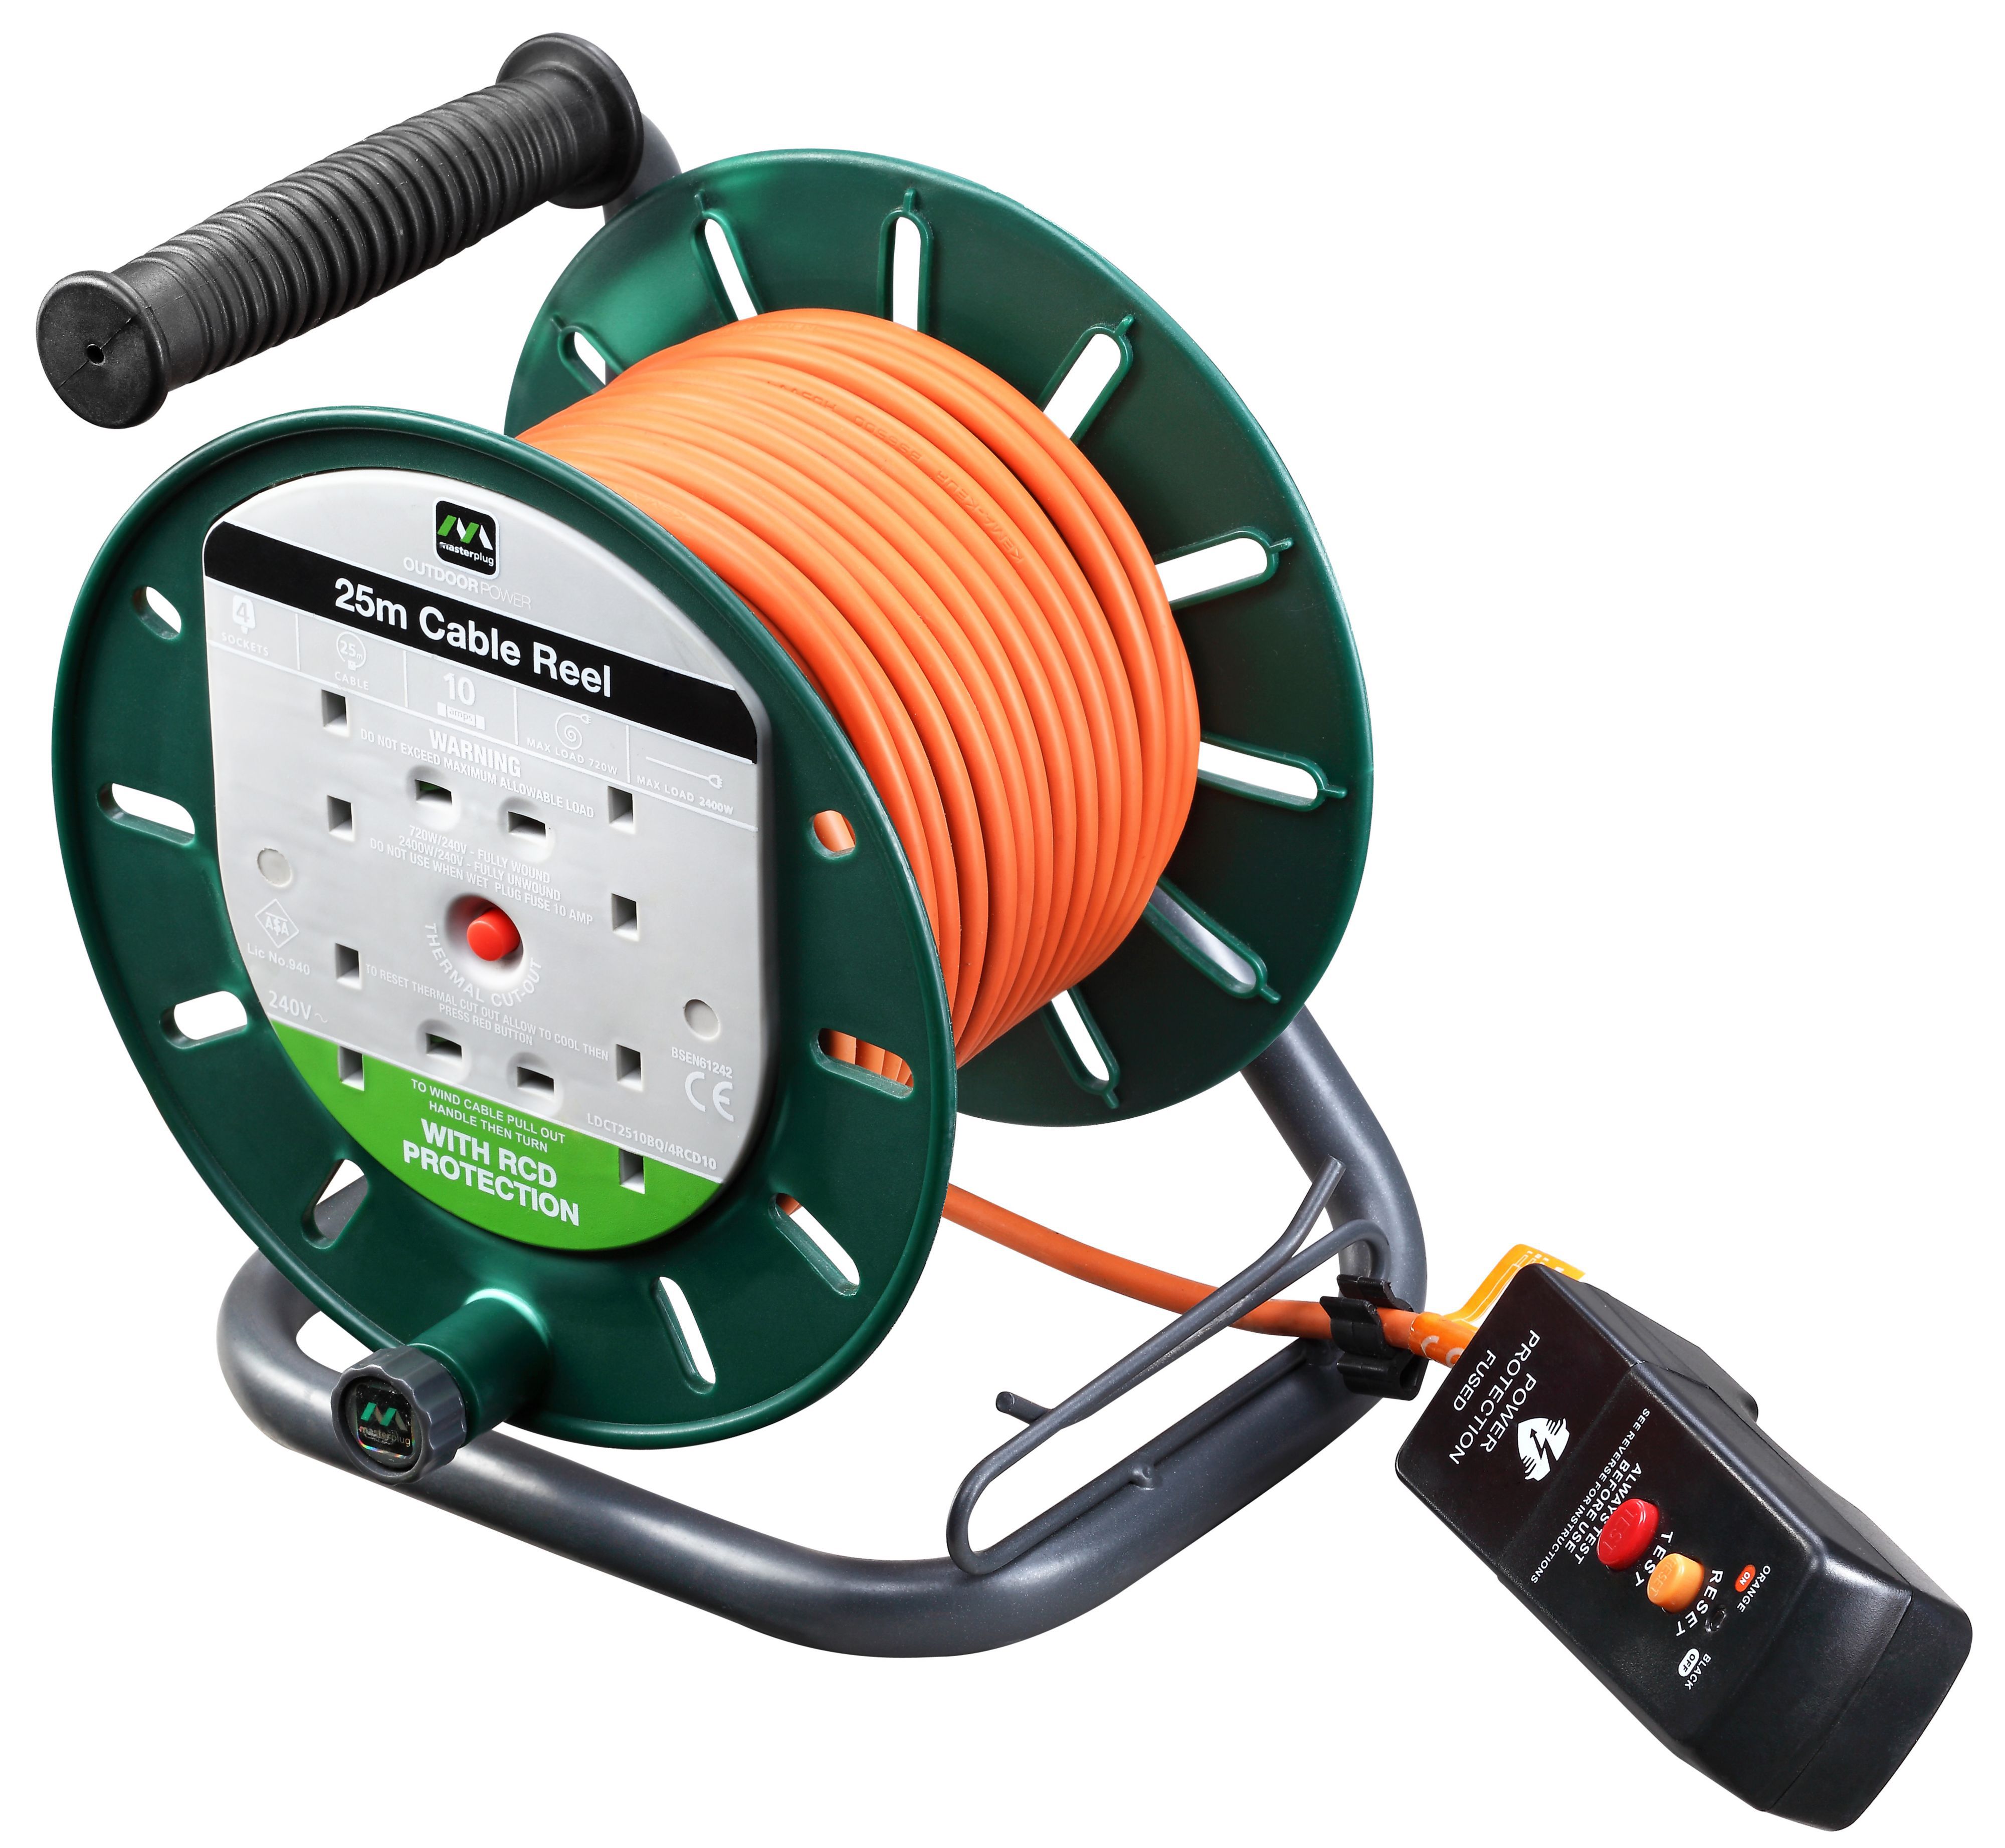 Masterplug Pro XT 4 socket Orange Indoor Cable reel, 15m